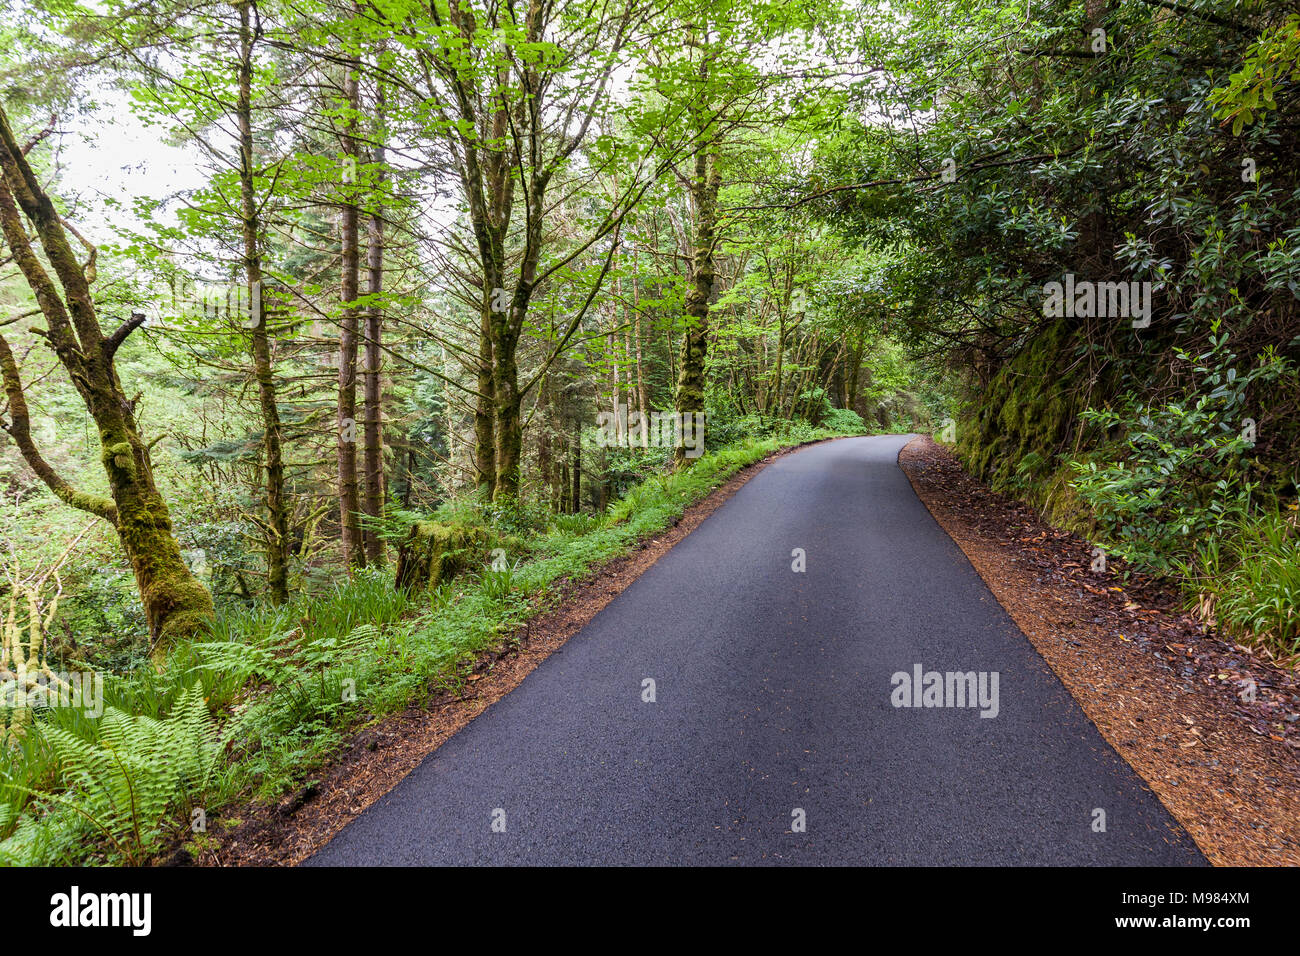 Schottland, Westküste, Highlands, bei Plockton, Straße durch einen dichten Wald, asfalto, dichte vegetazione, grün, Weg, Richtung Foto Stock